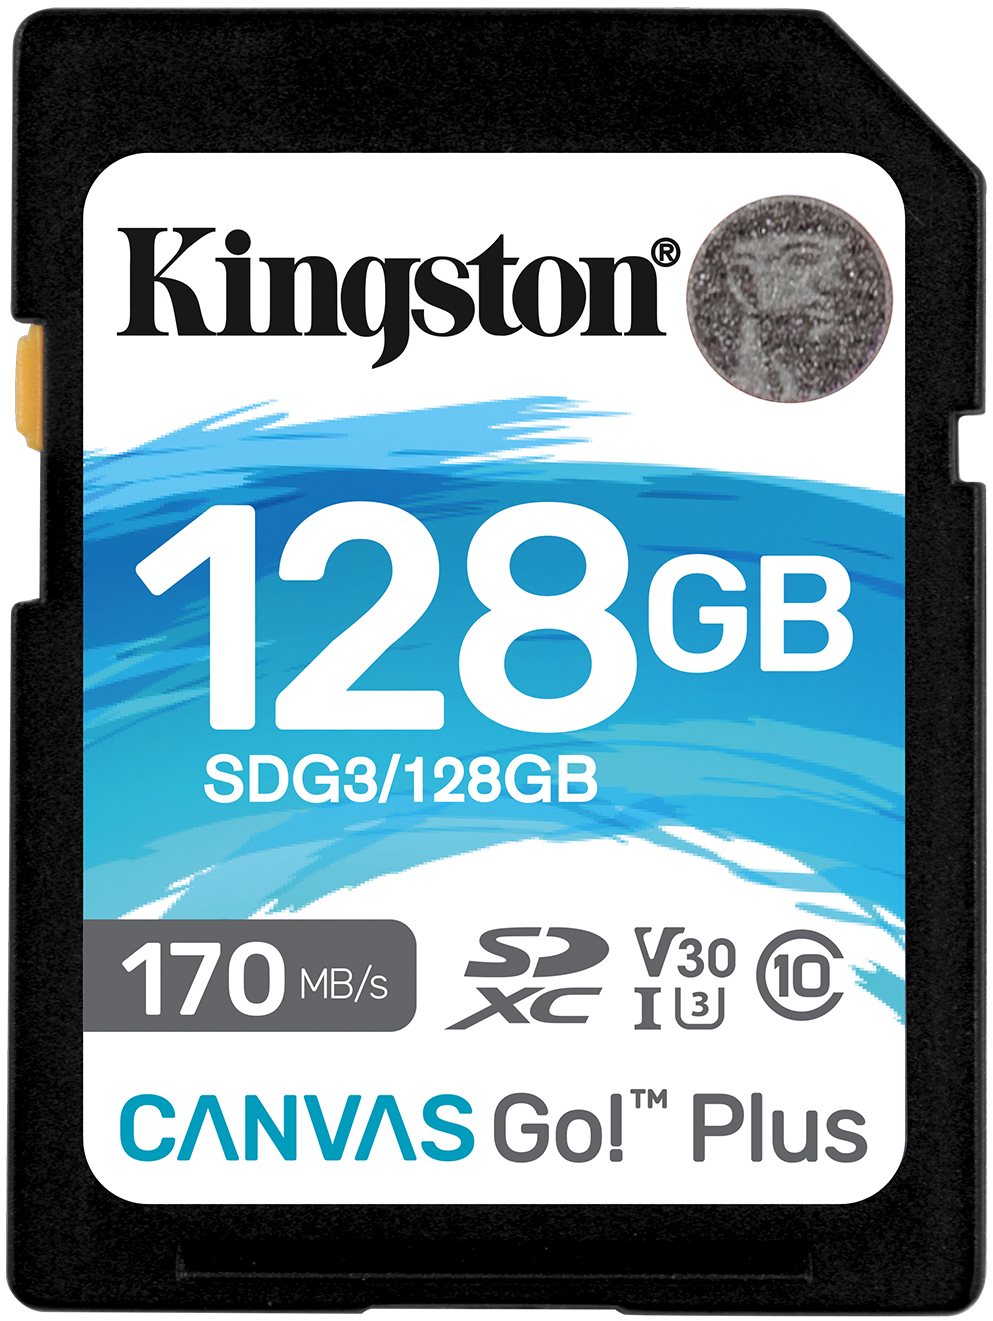 Kingston Canvas Go! Plus SDXC 128GB